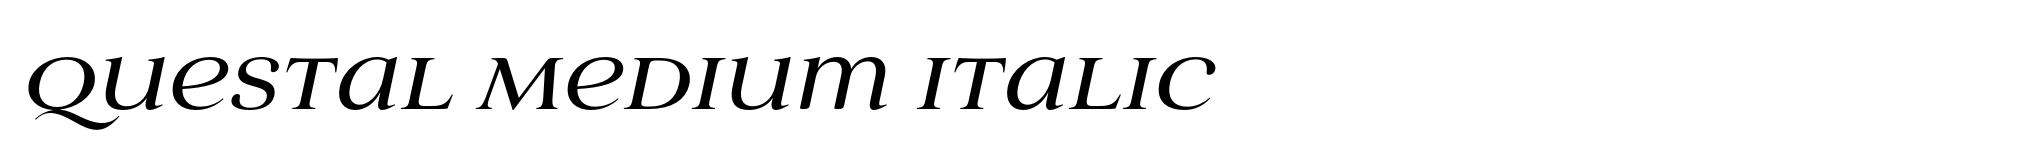 Questal Medium Italic image